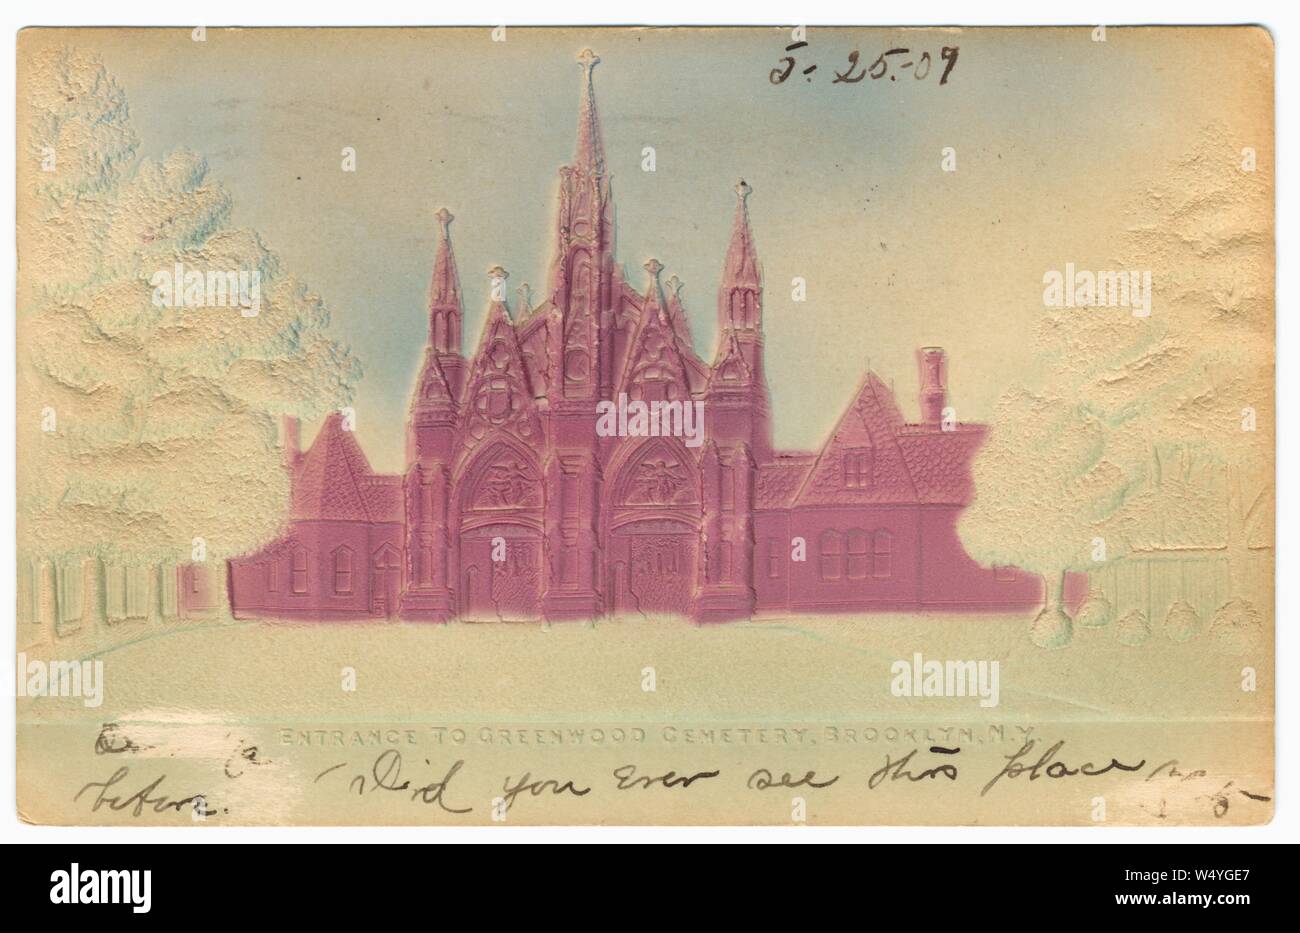 Carte postale illustrée de l'entrée de Greenwood Cemetery de Brooklyn, New York City, New York, publié par l'illustre la carte postale, 1907. À partir de la Bibliothèque publique de New York. () Banque D'Images